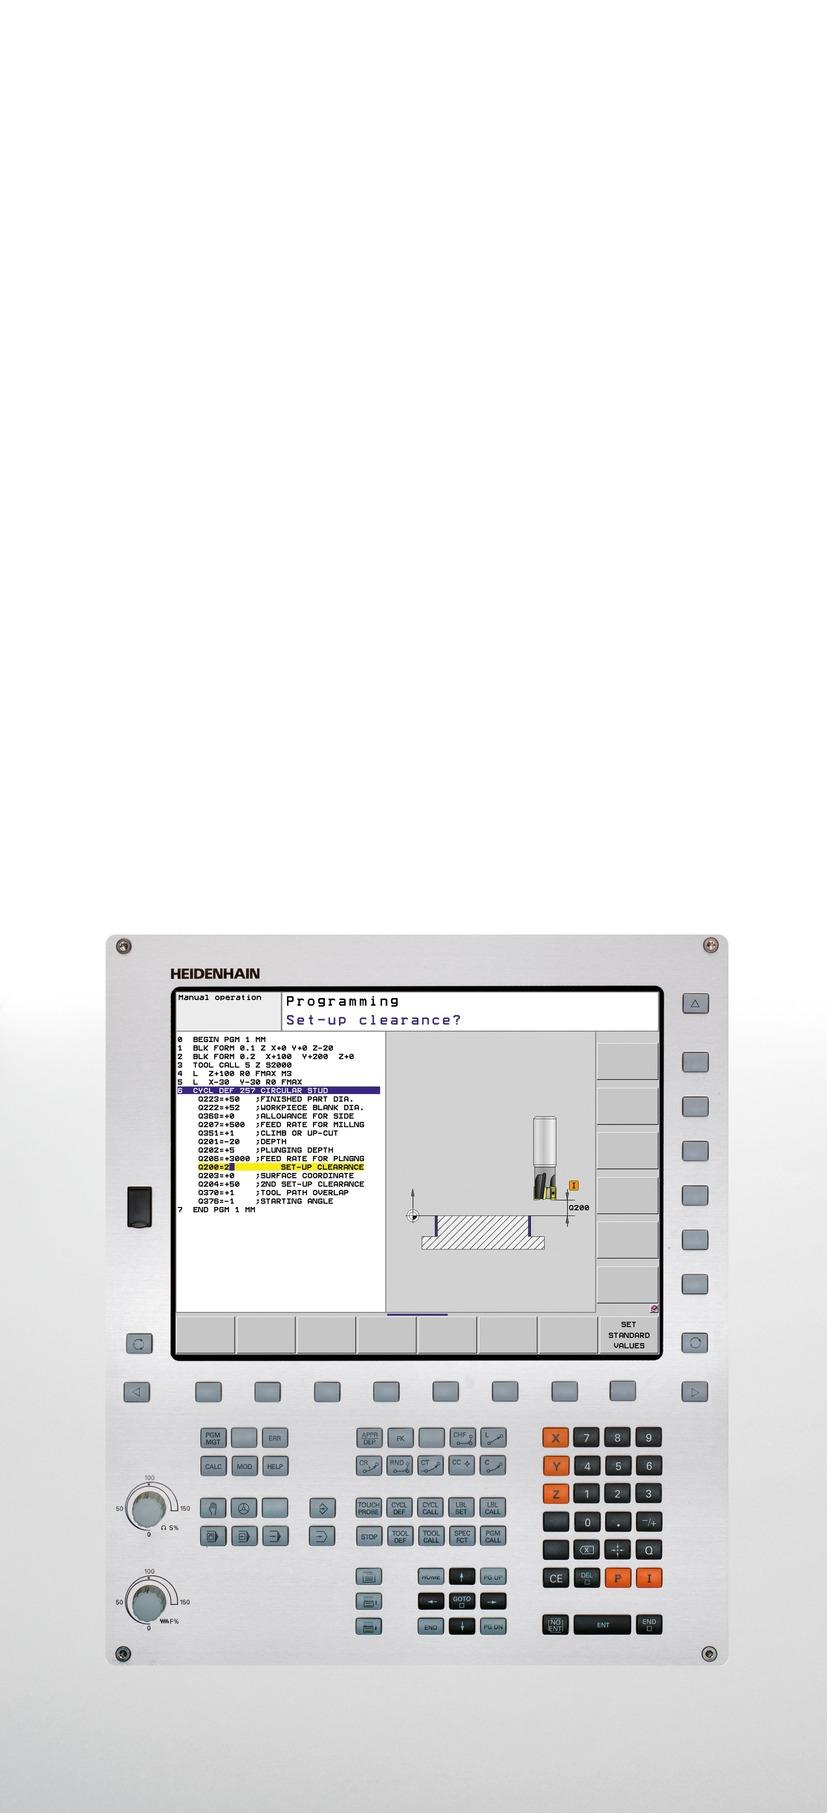 TNC 620 Podręcznik obsługi dlaużytkownika Programowanie cykli NC-Software